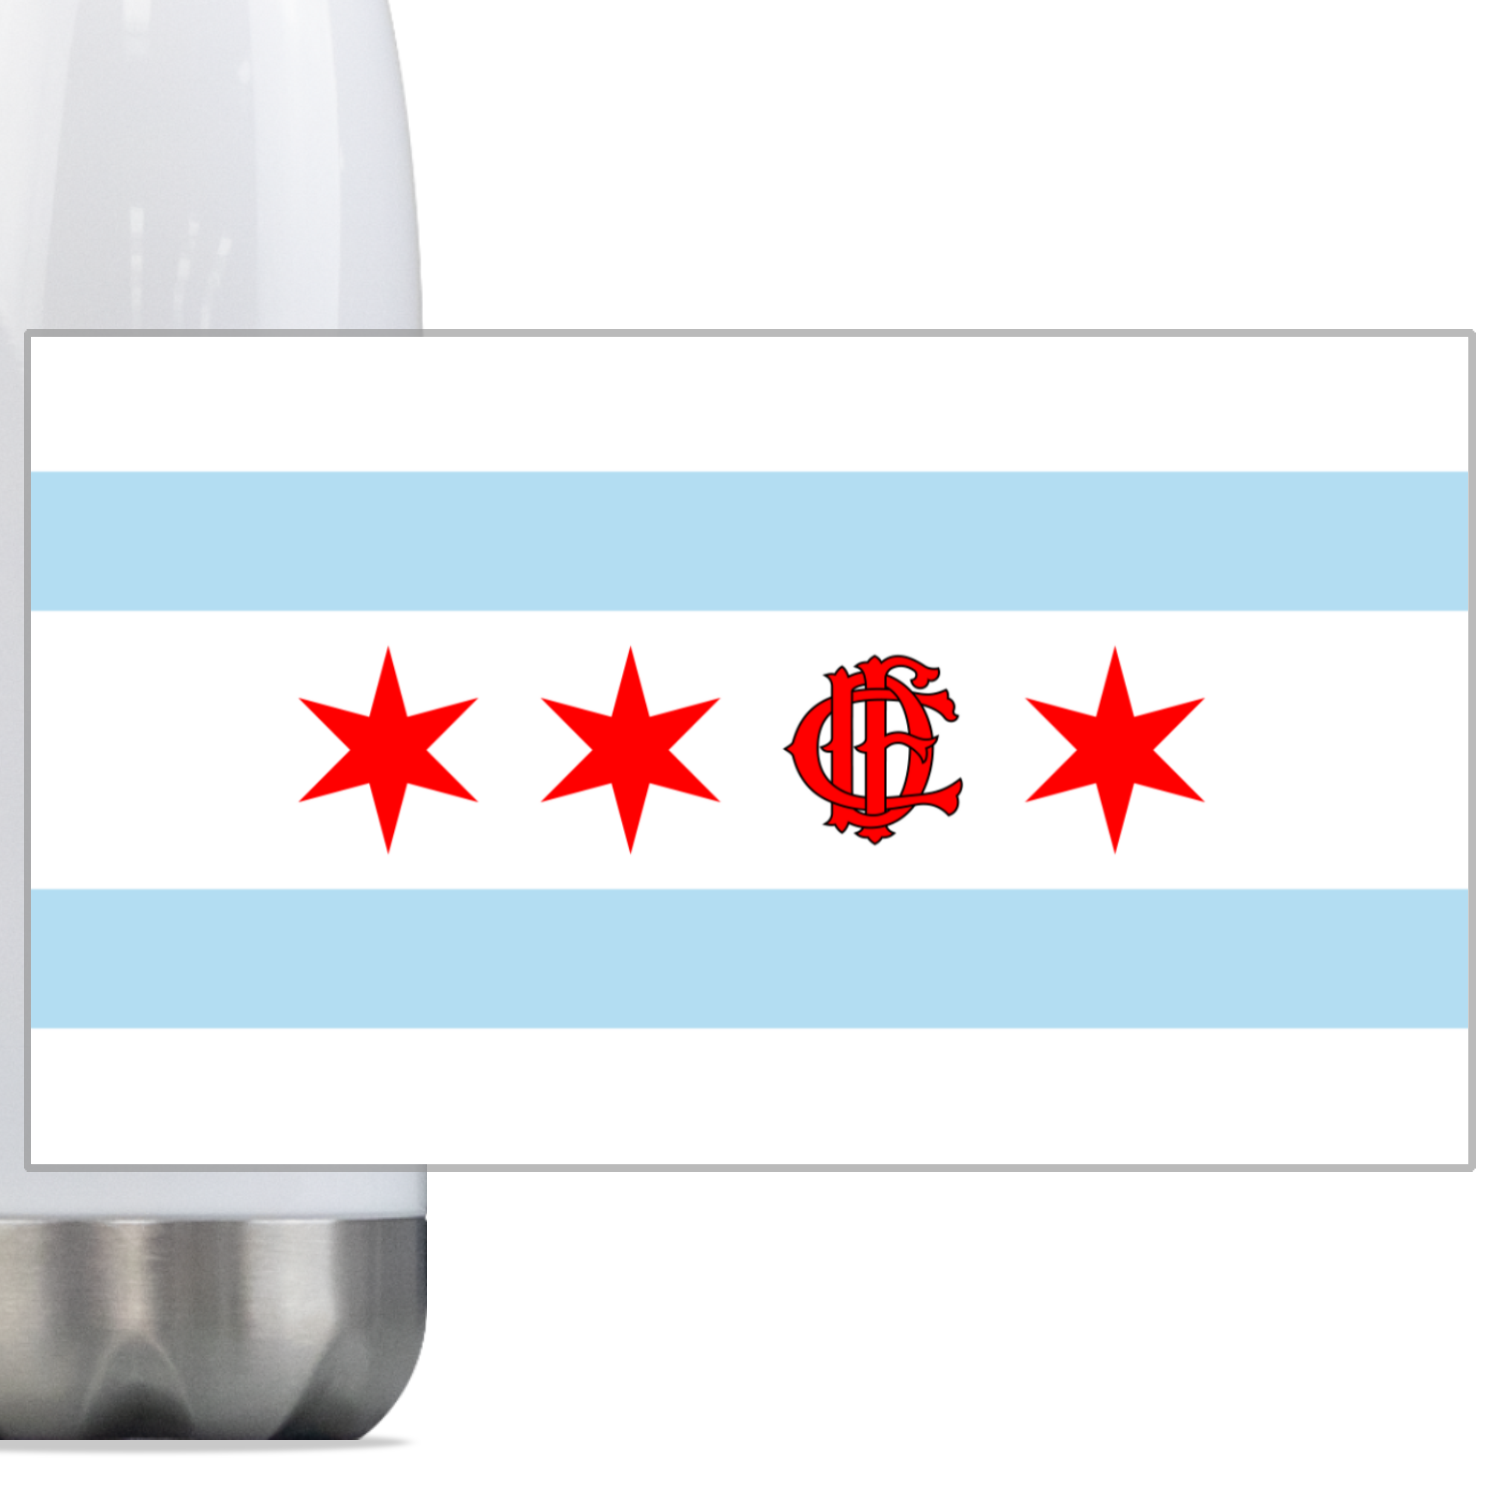 Chicago FD/EMT Flag Steel Slim Water Bottle